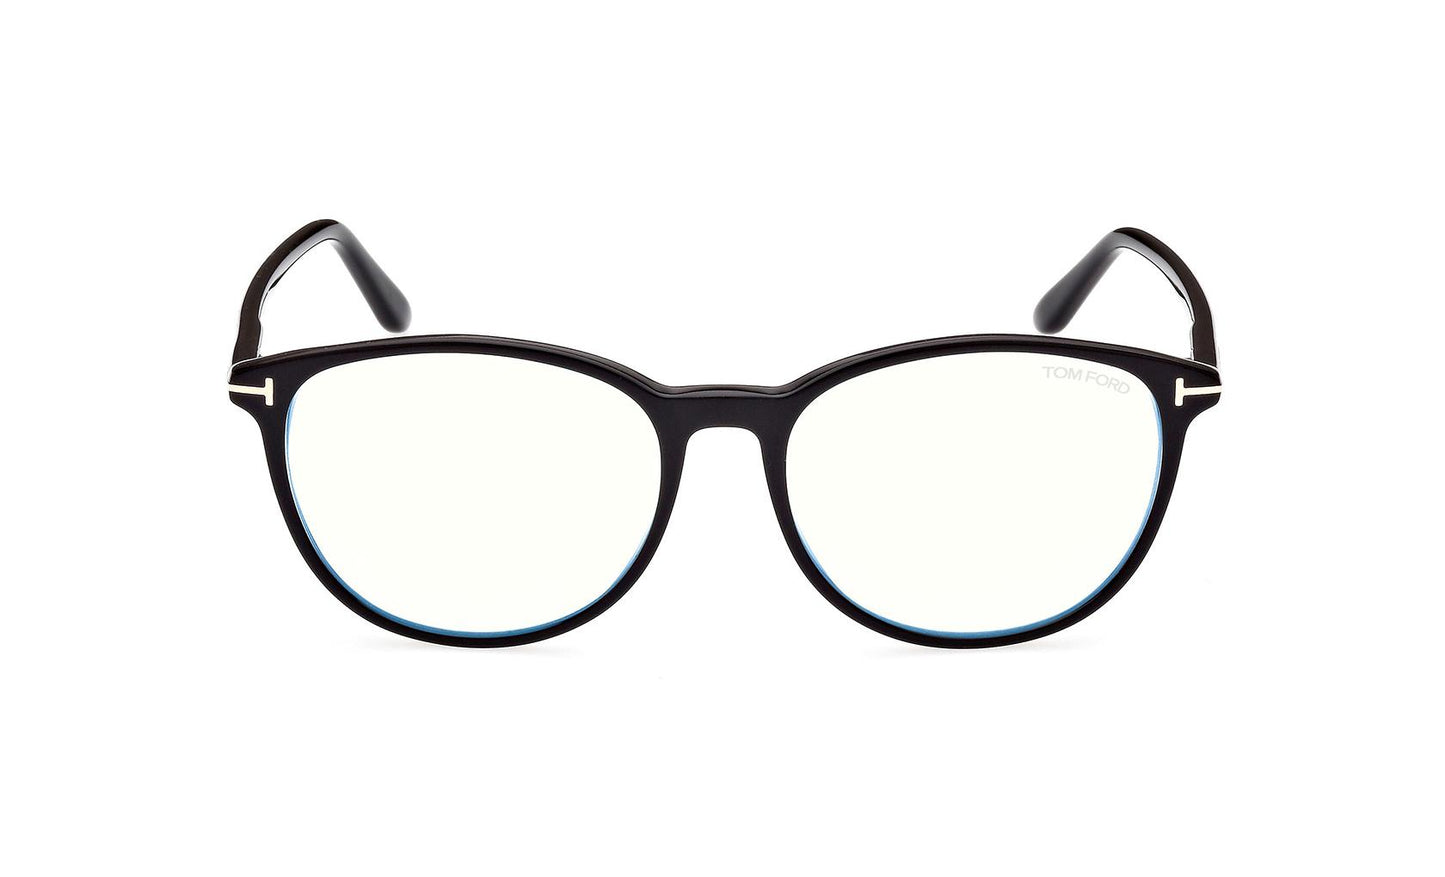 Tom Ford Eyeglasses FT5810/B 001